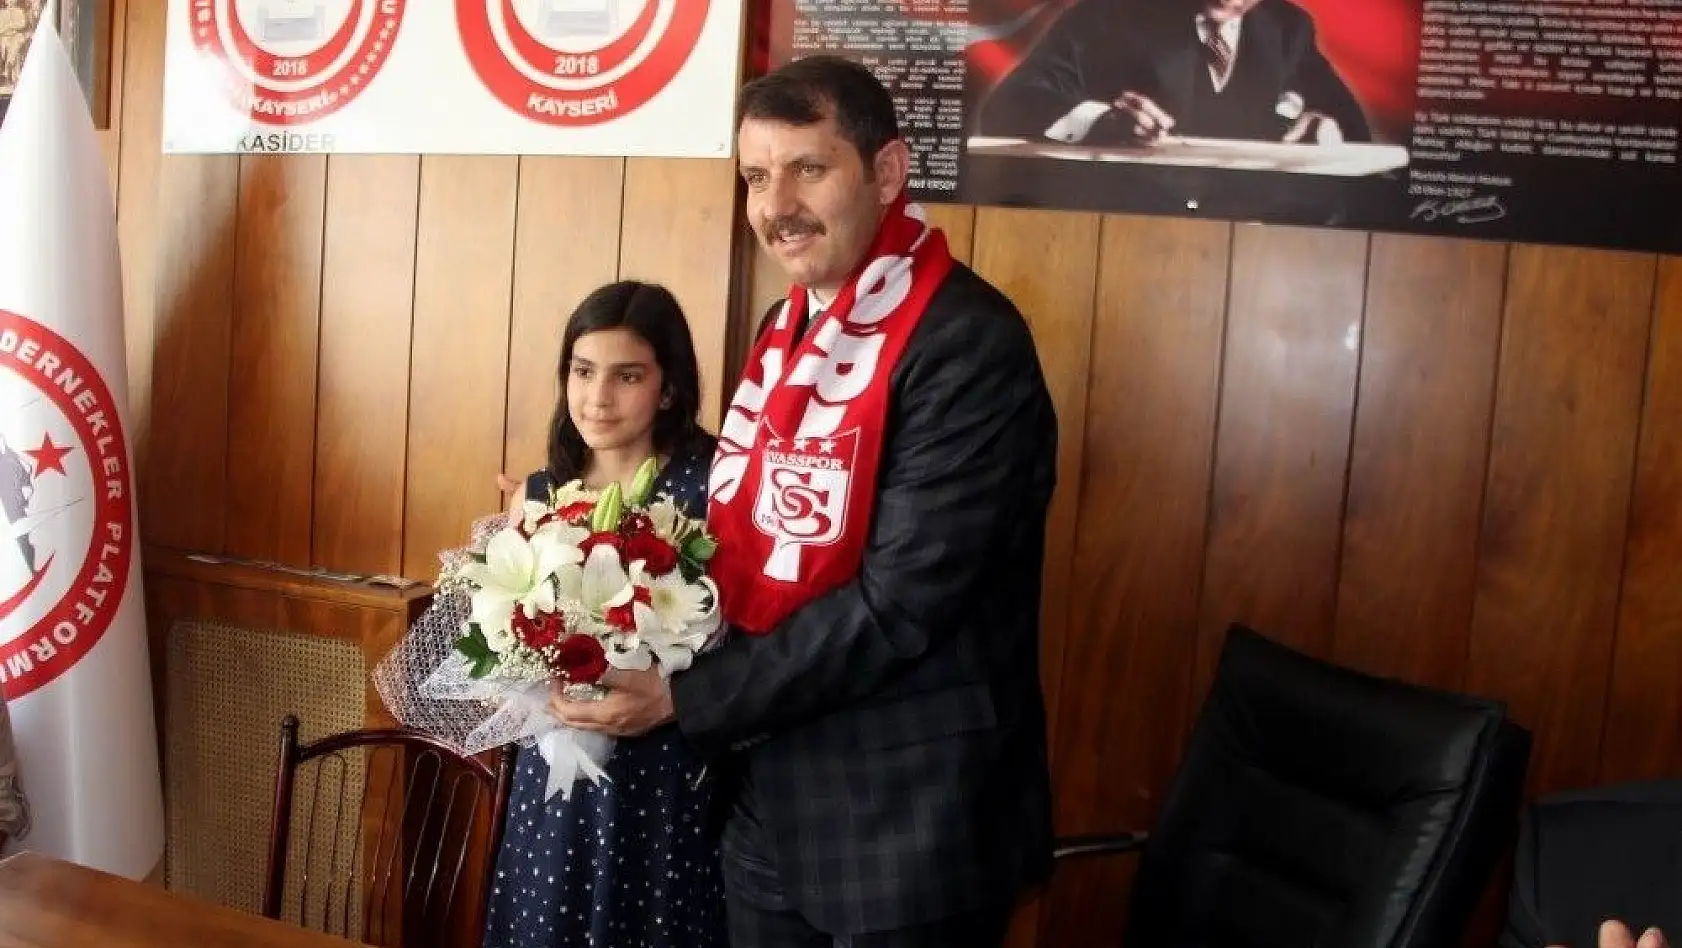 Vali Ayhan Kayseri Sivaslı Dernekler Platformu'nu ziyaret etti